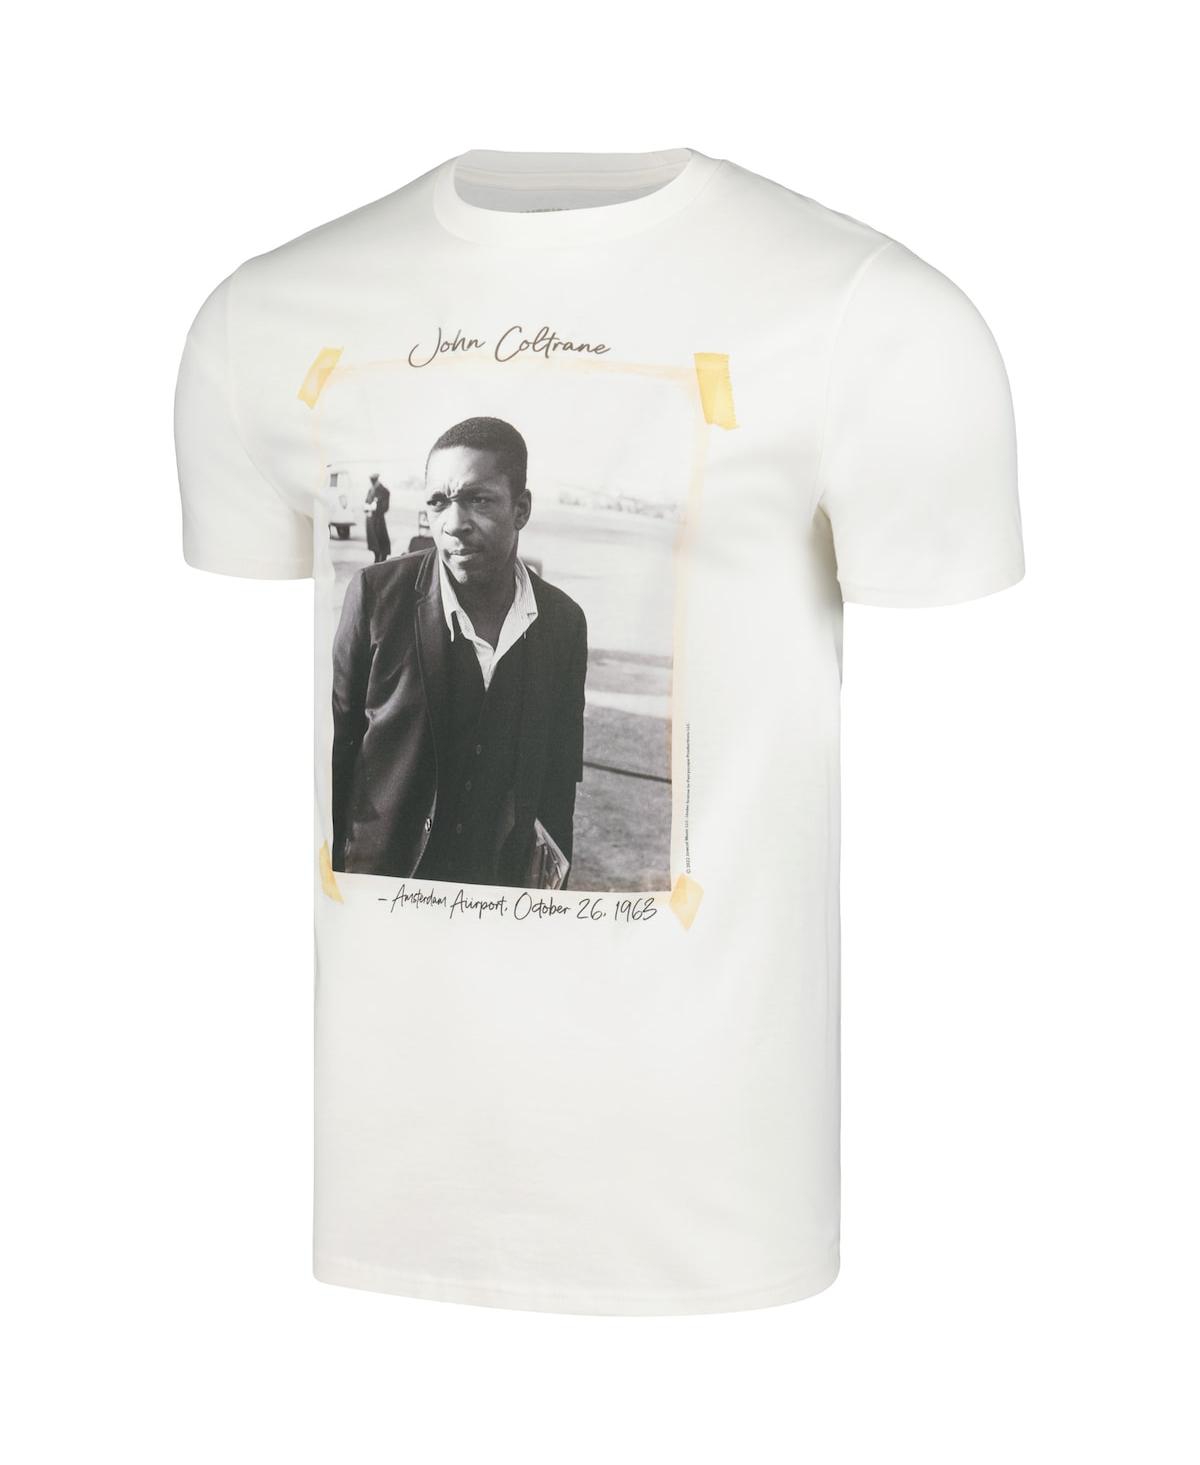 Shop American Classics Men's Natural John Coltrane Scrapbook Photo T-shirt